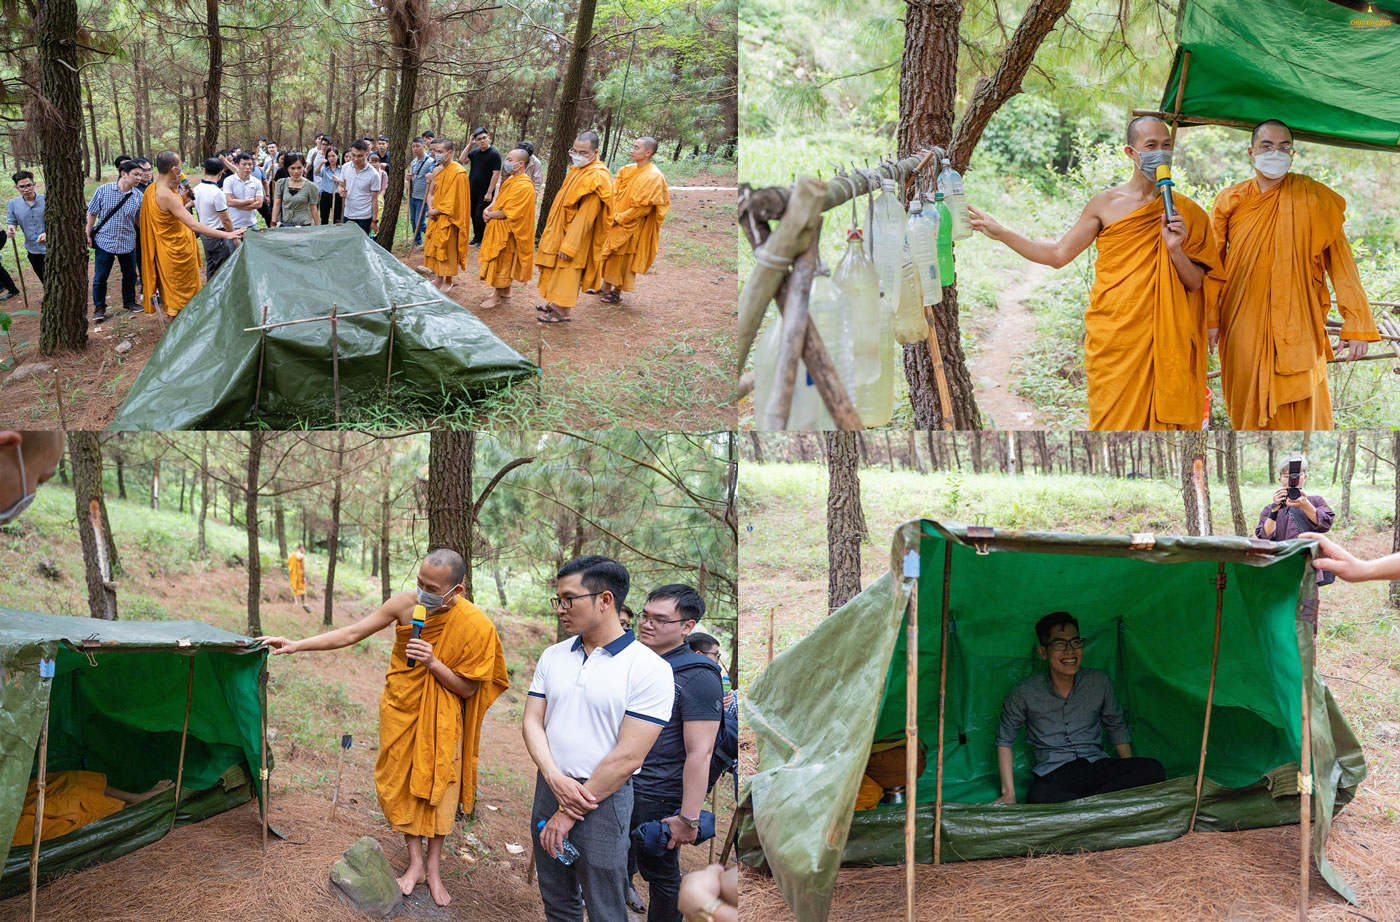 Điều đặc biệt, trong chuyến thăm chùa, đoàn đã có dịp được vào tham quan khu rừng thiền Tăng - đây là duyên lành, giúp các thành viên hiểu thêm về sự tu tập của Tăng chúng chùa Ba Vàng